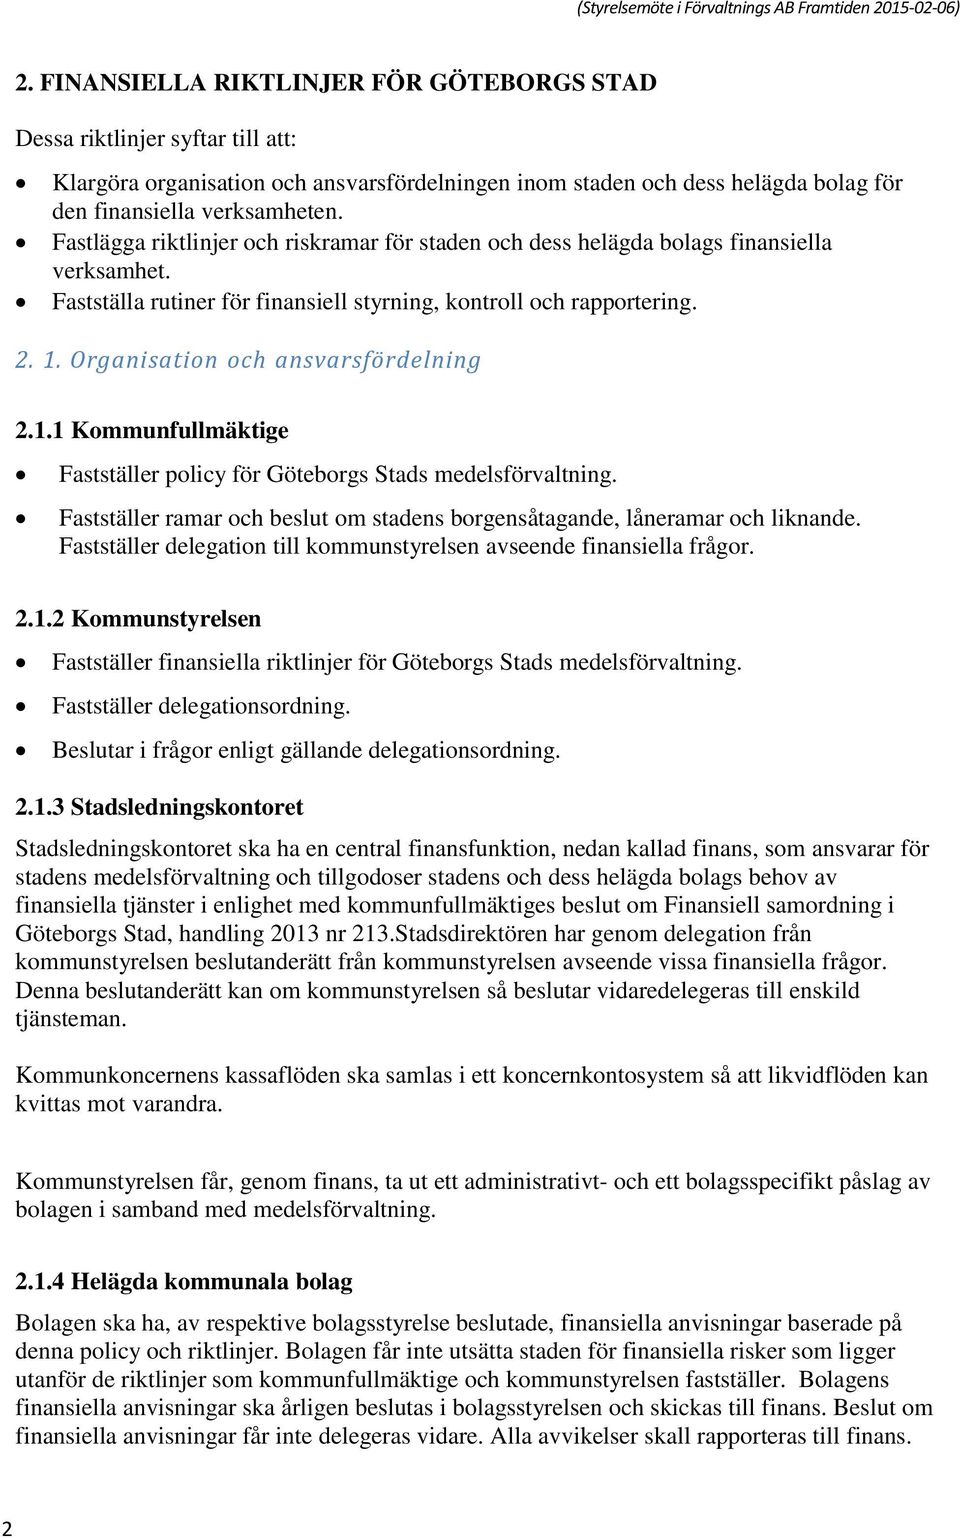 Organisation och ansvarsfördelning 2.1.1 Kommunfullmäktige Fastställer policy för Göteborgs Stads medelsförvaltning. Fastställer ramar och beslut om stadens borgensåtagande, låneramar och liknande.